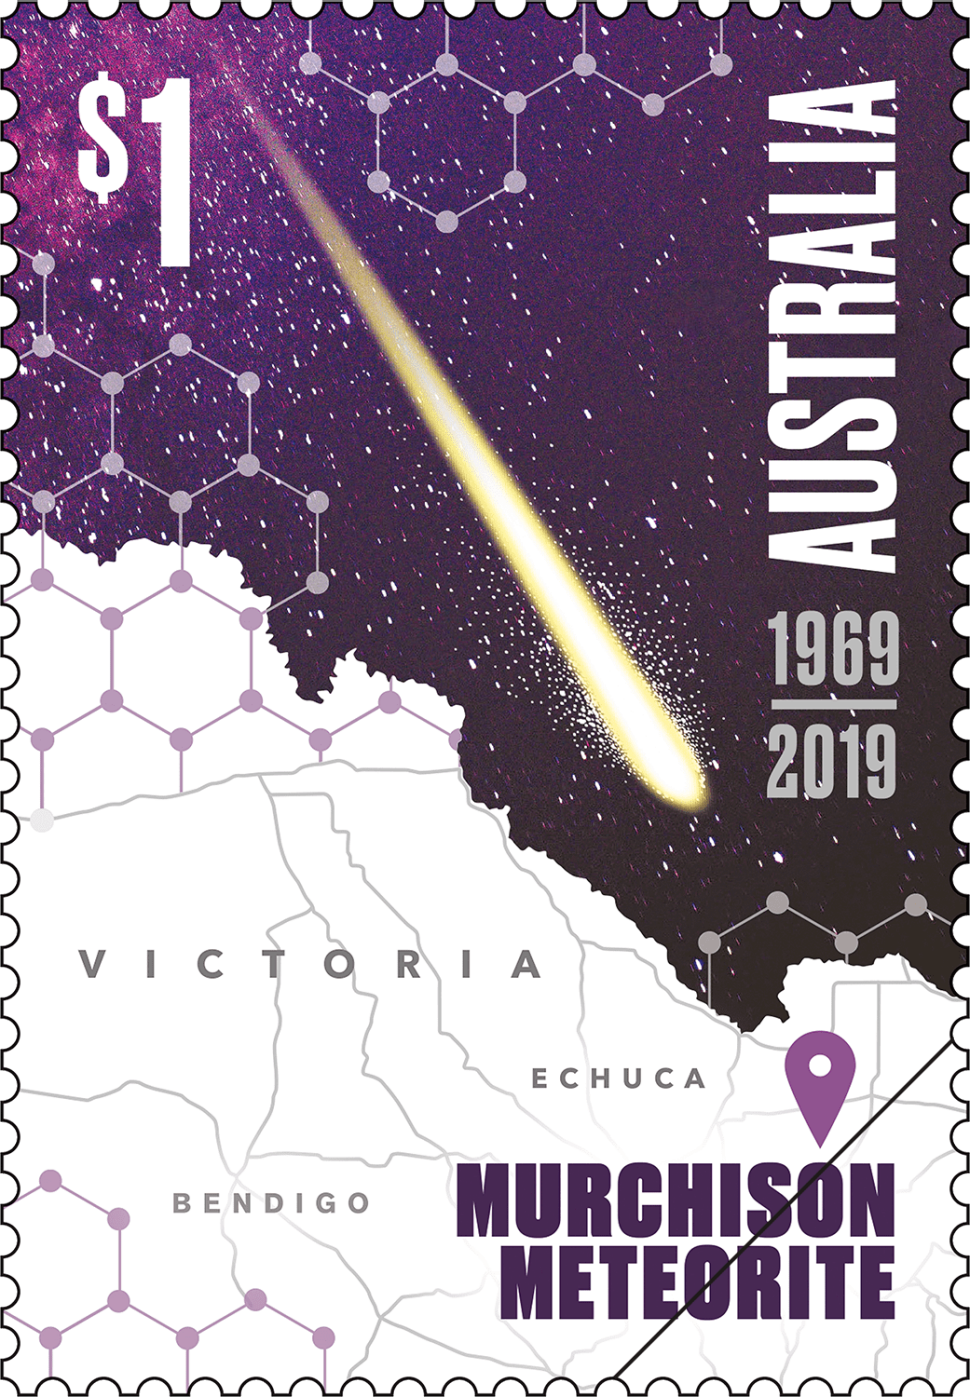 Murchison Meteorite: 1969-2019 stamp